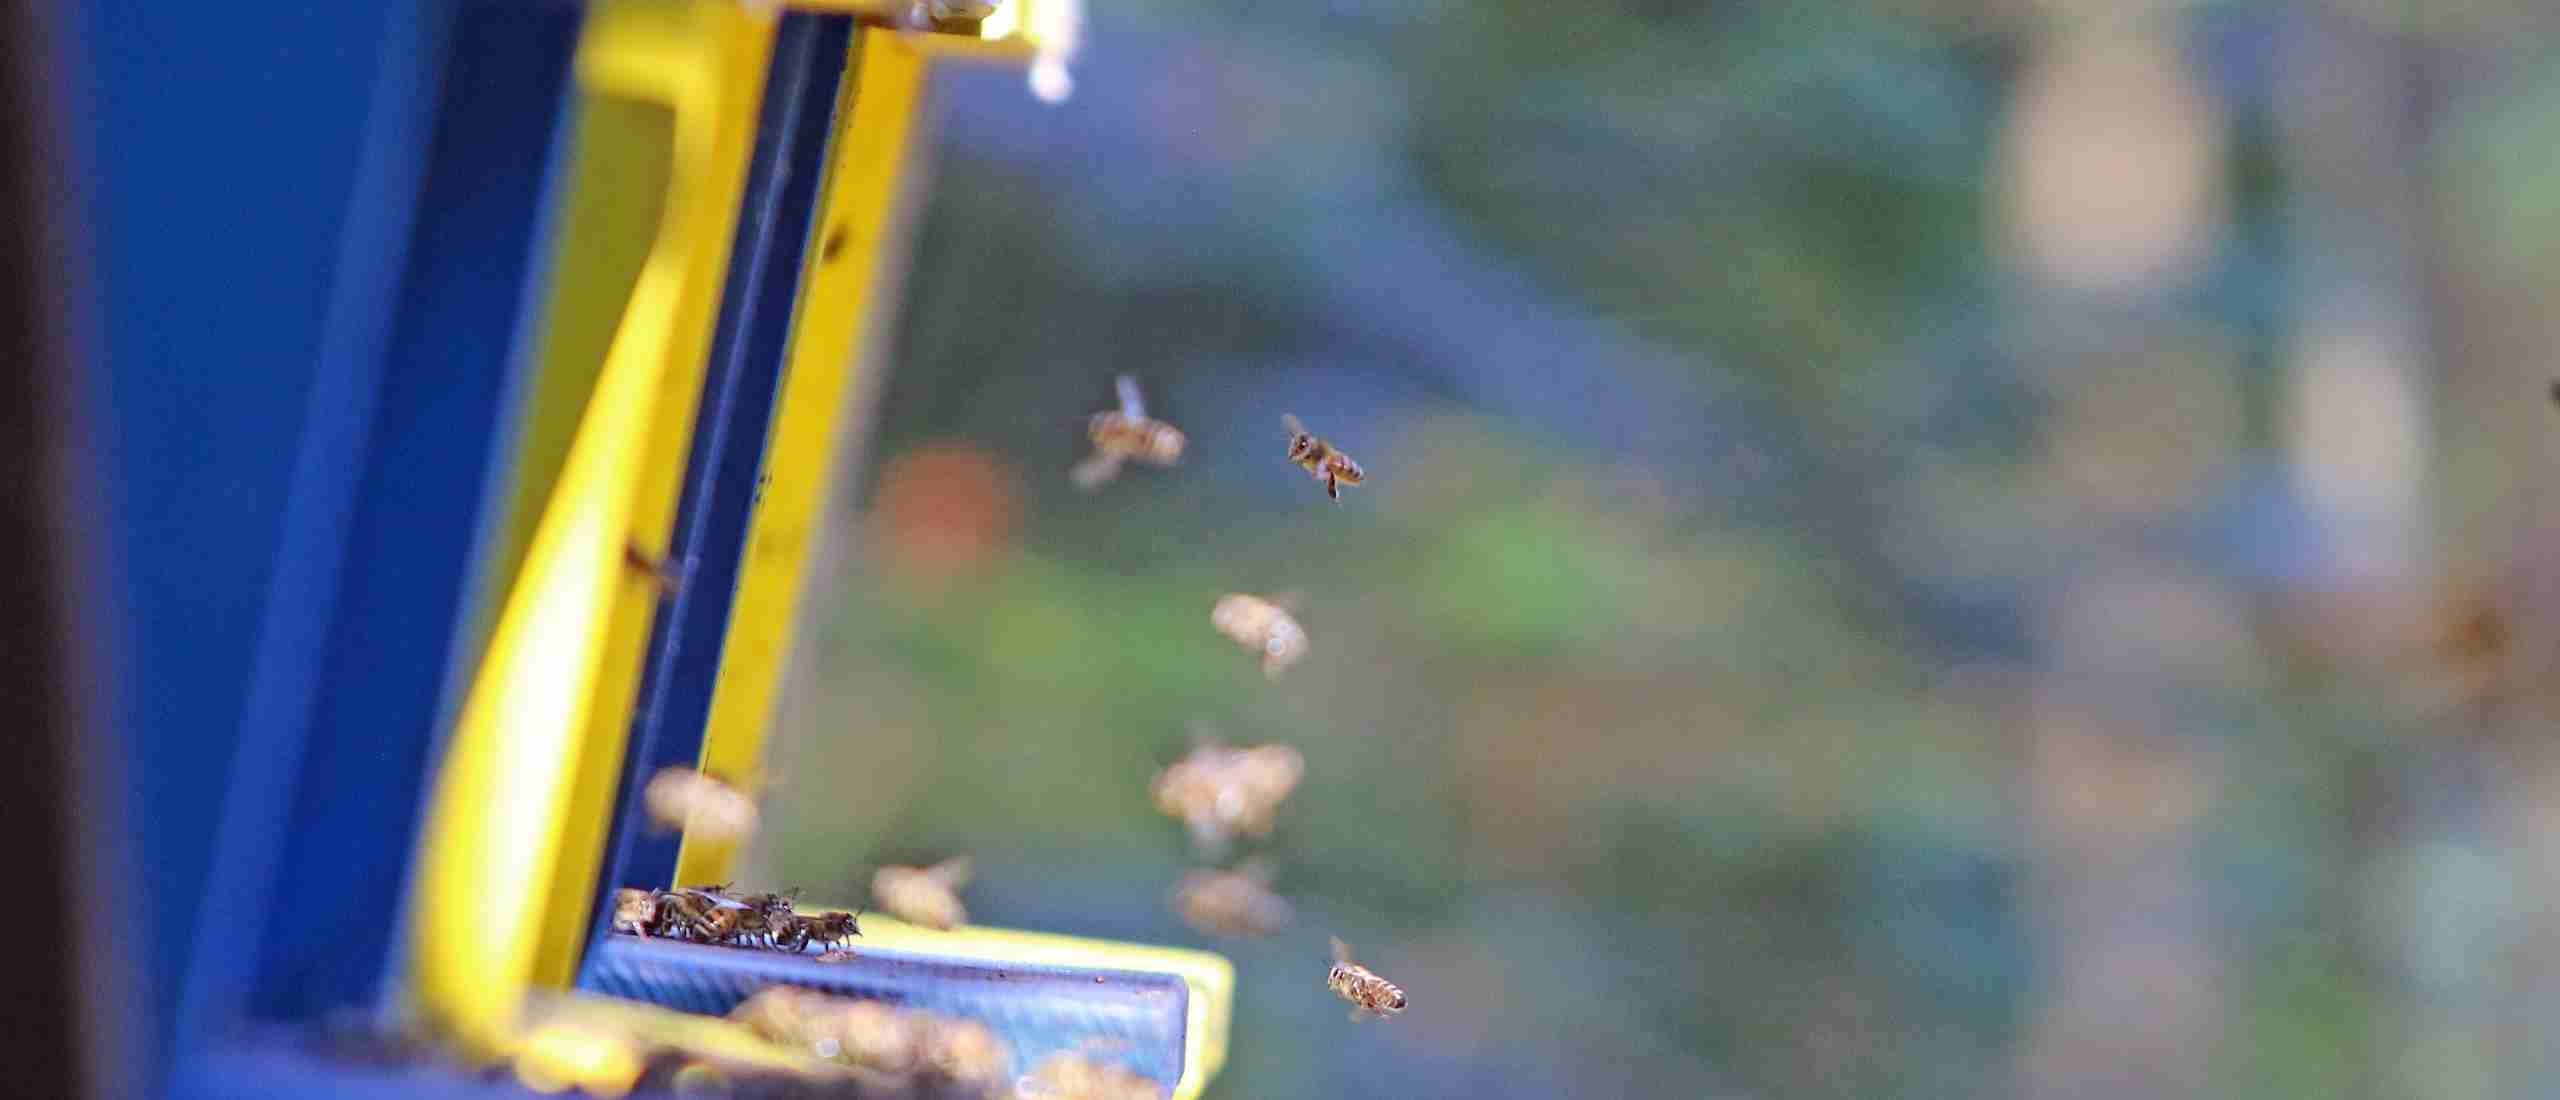 waarom zoemen bijen